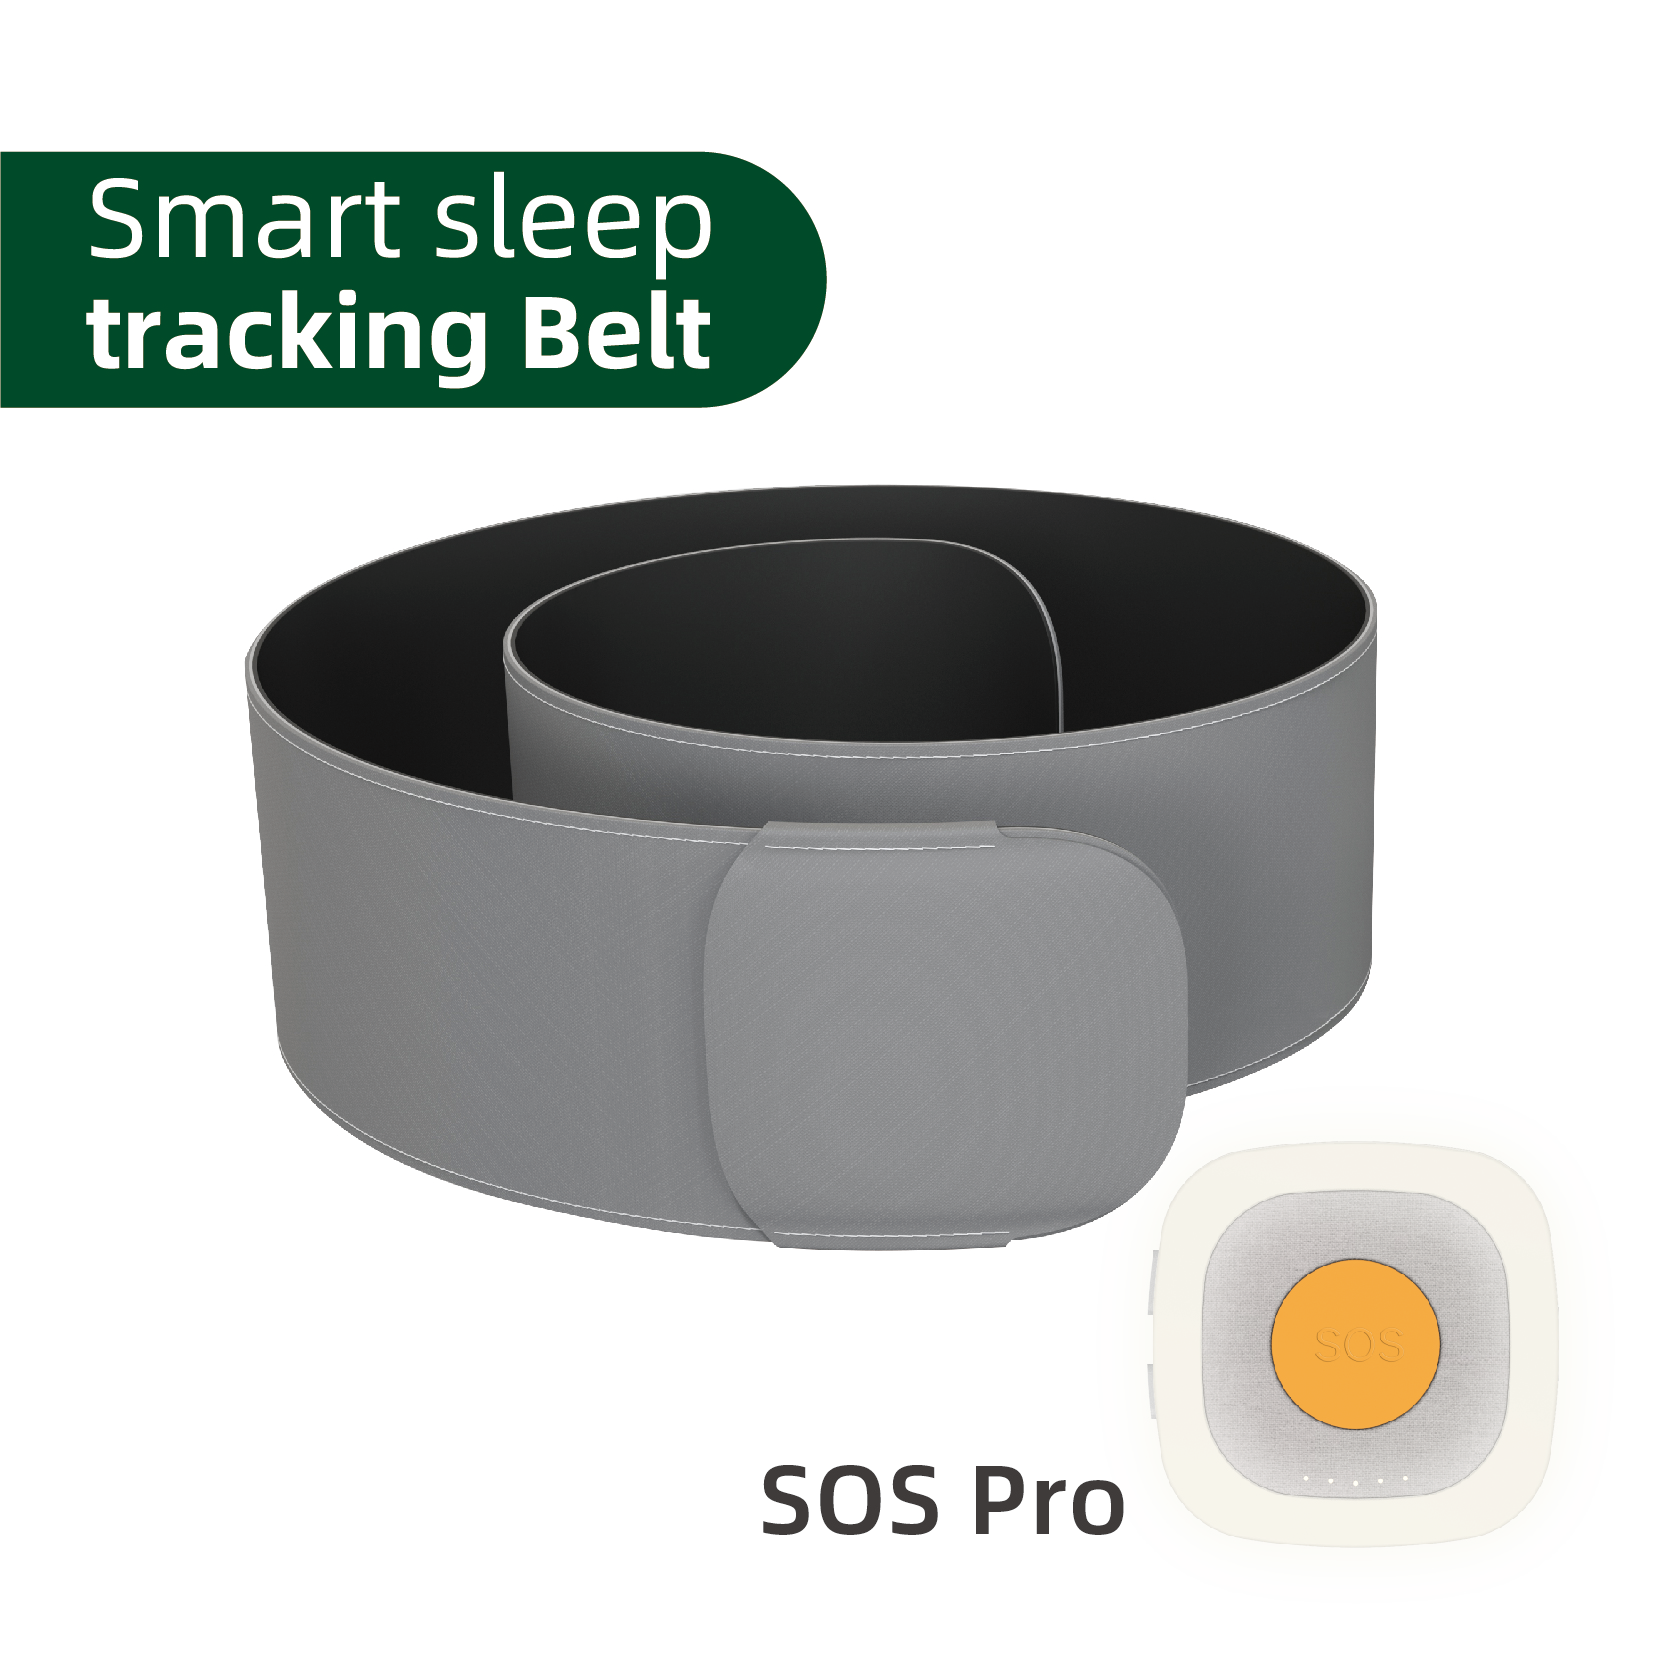 Smart sleep tracking belt